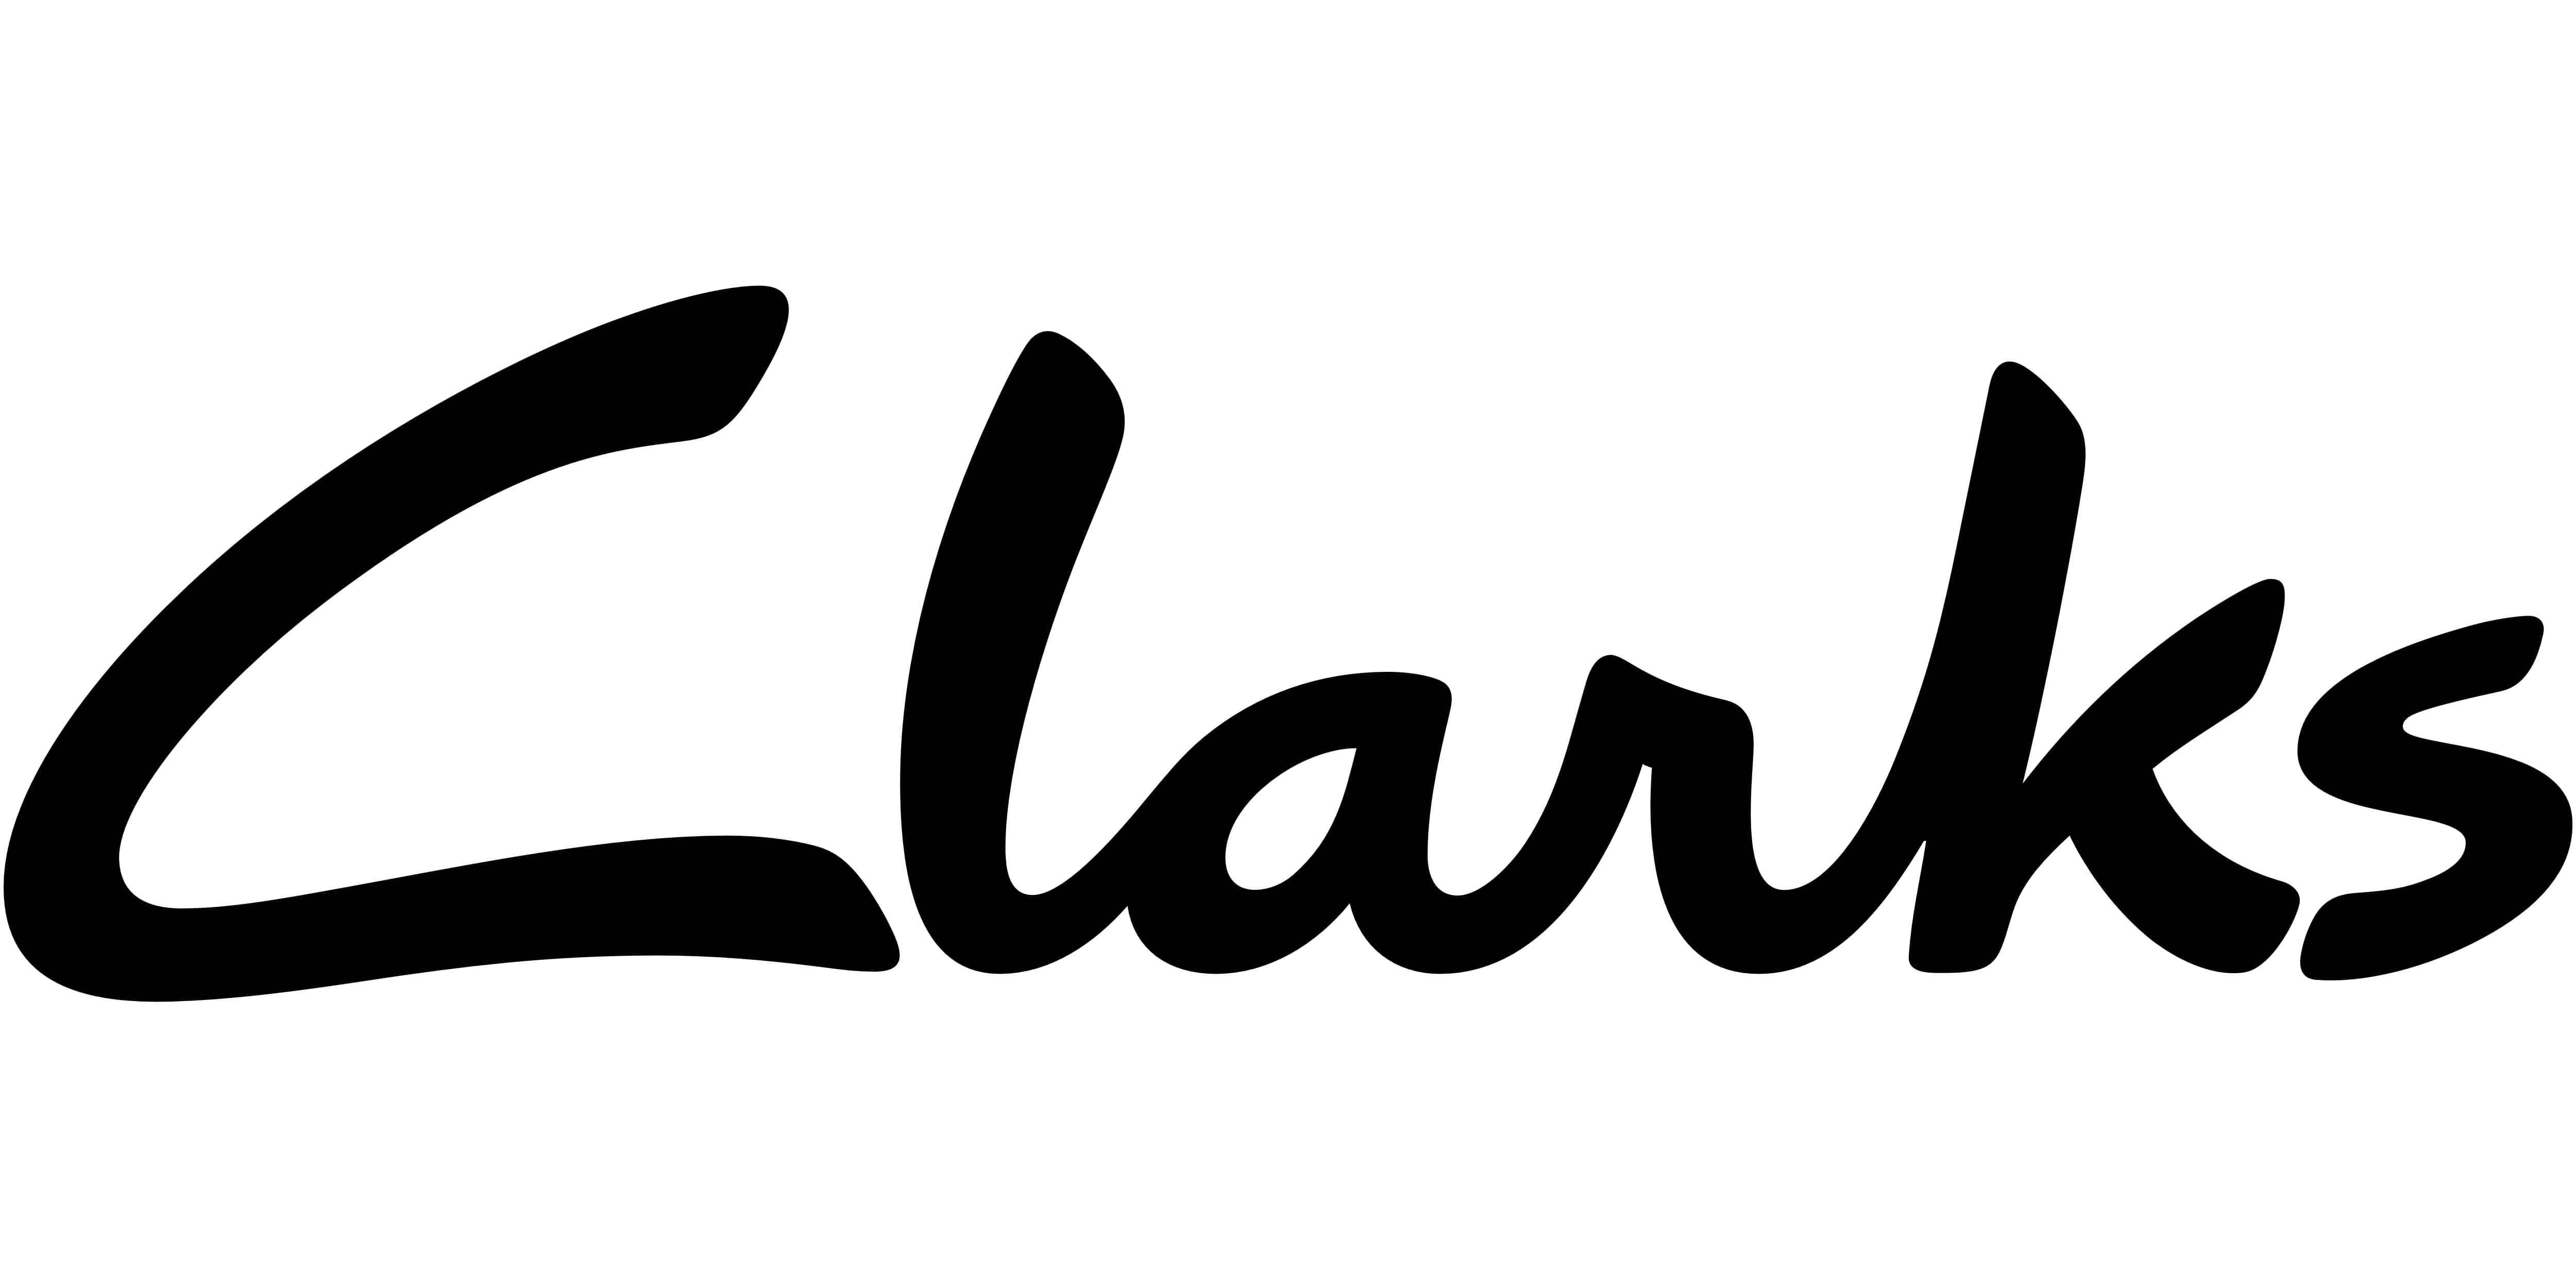 clarks logo history